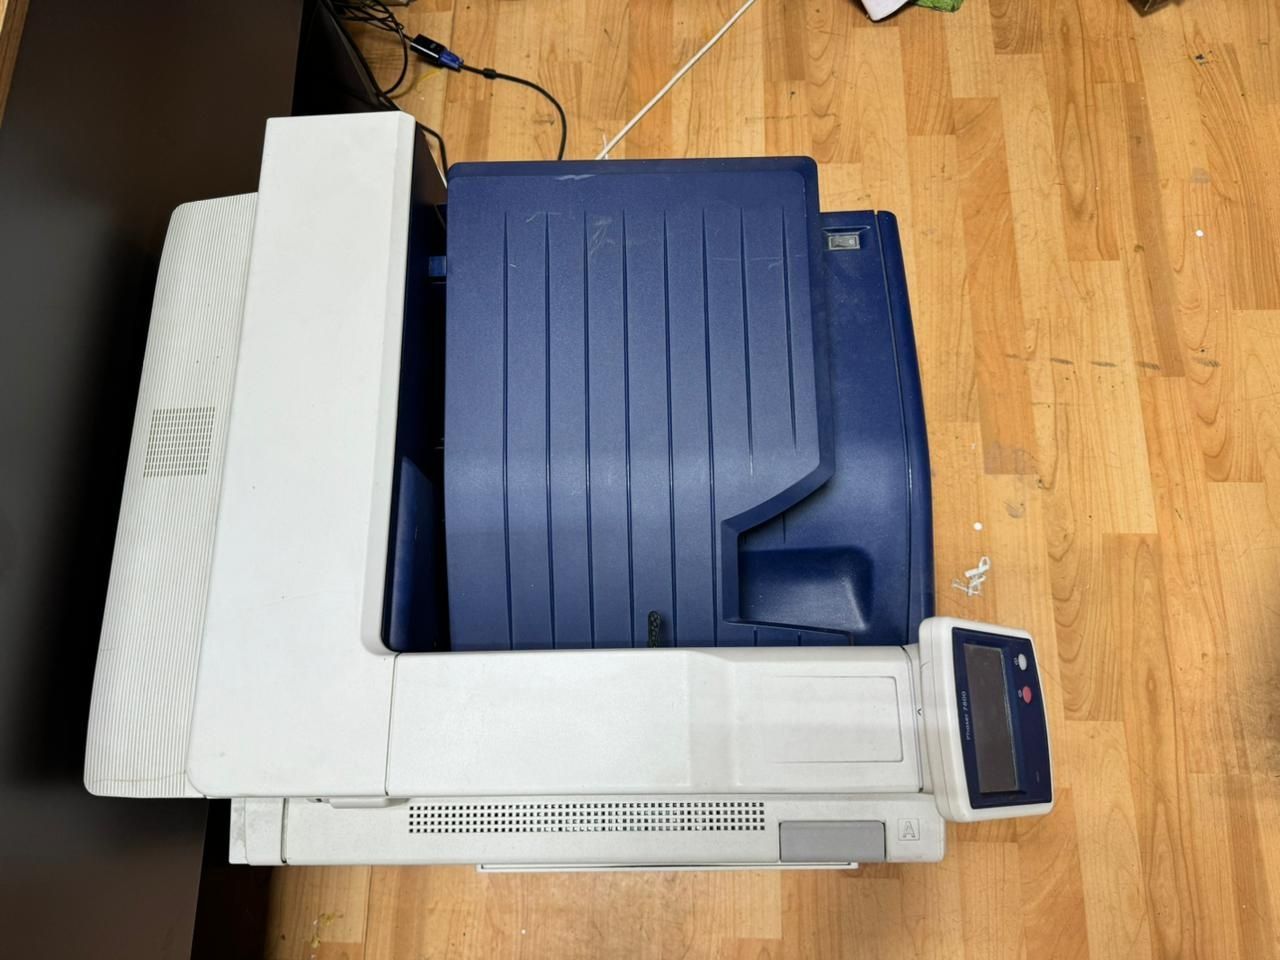 Xerox 7800 на ремонт